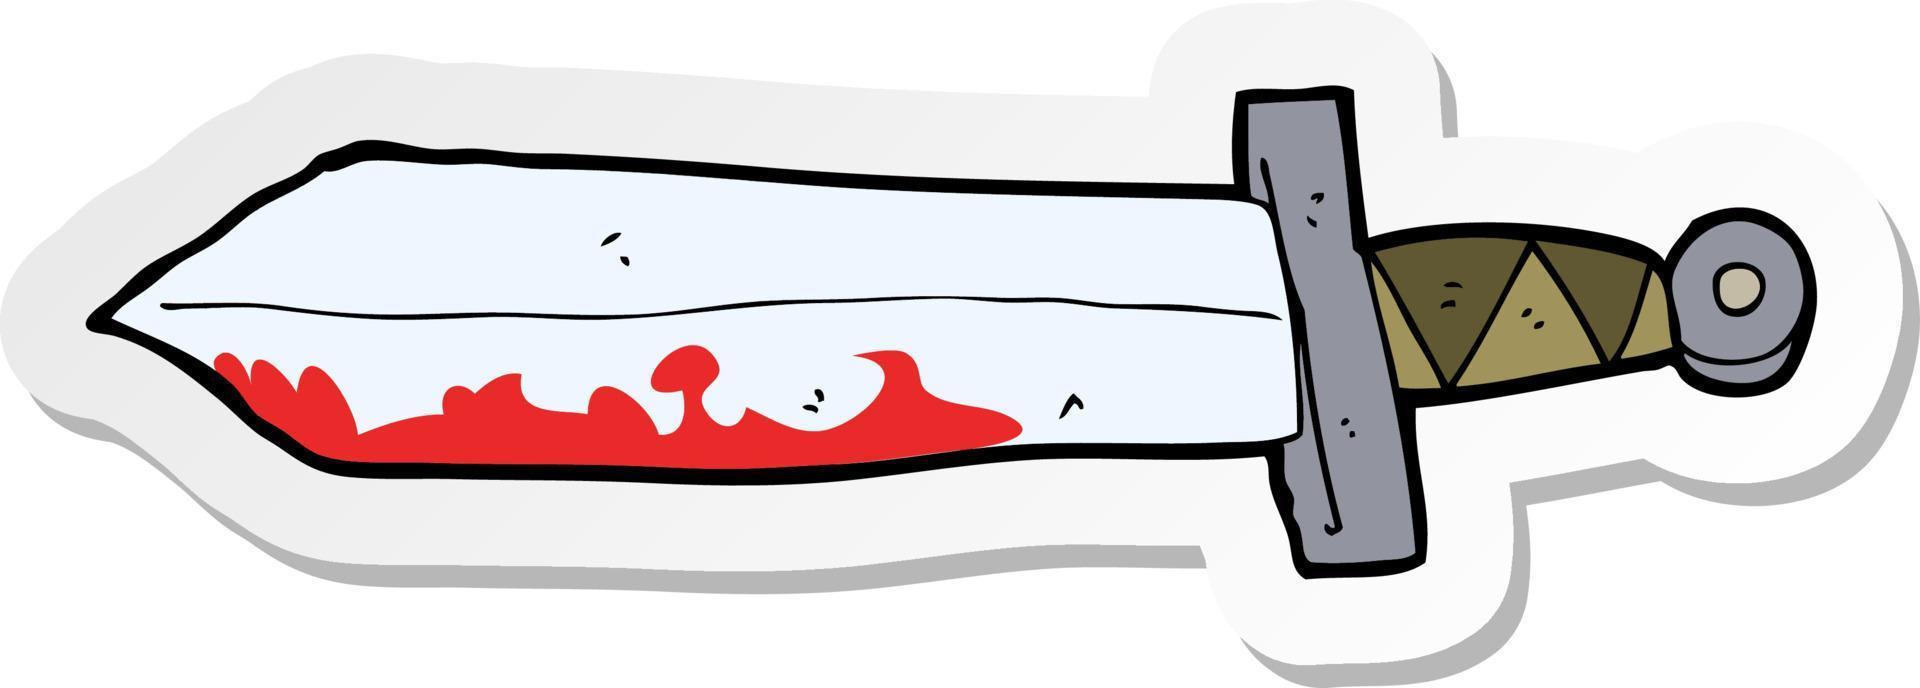 pegatina de una espada sangrienta de dibujos animados vector